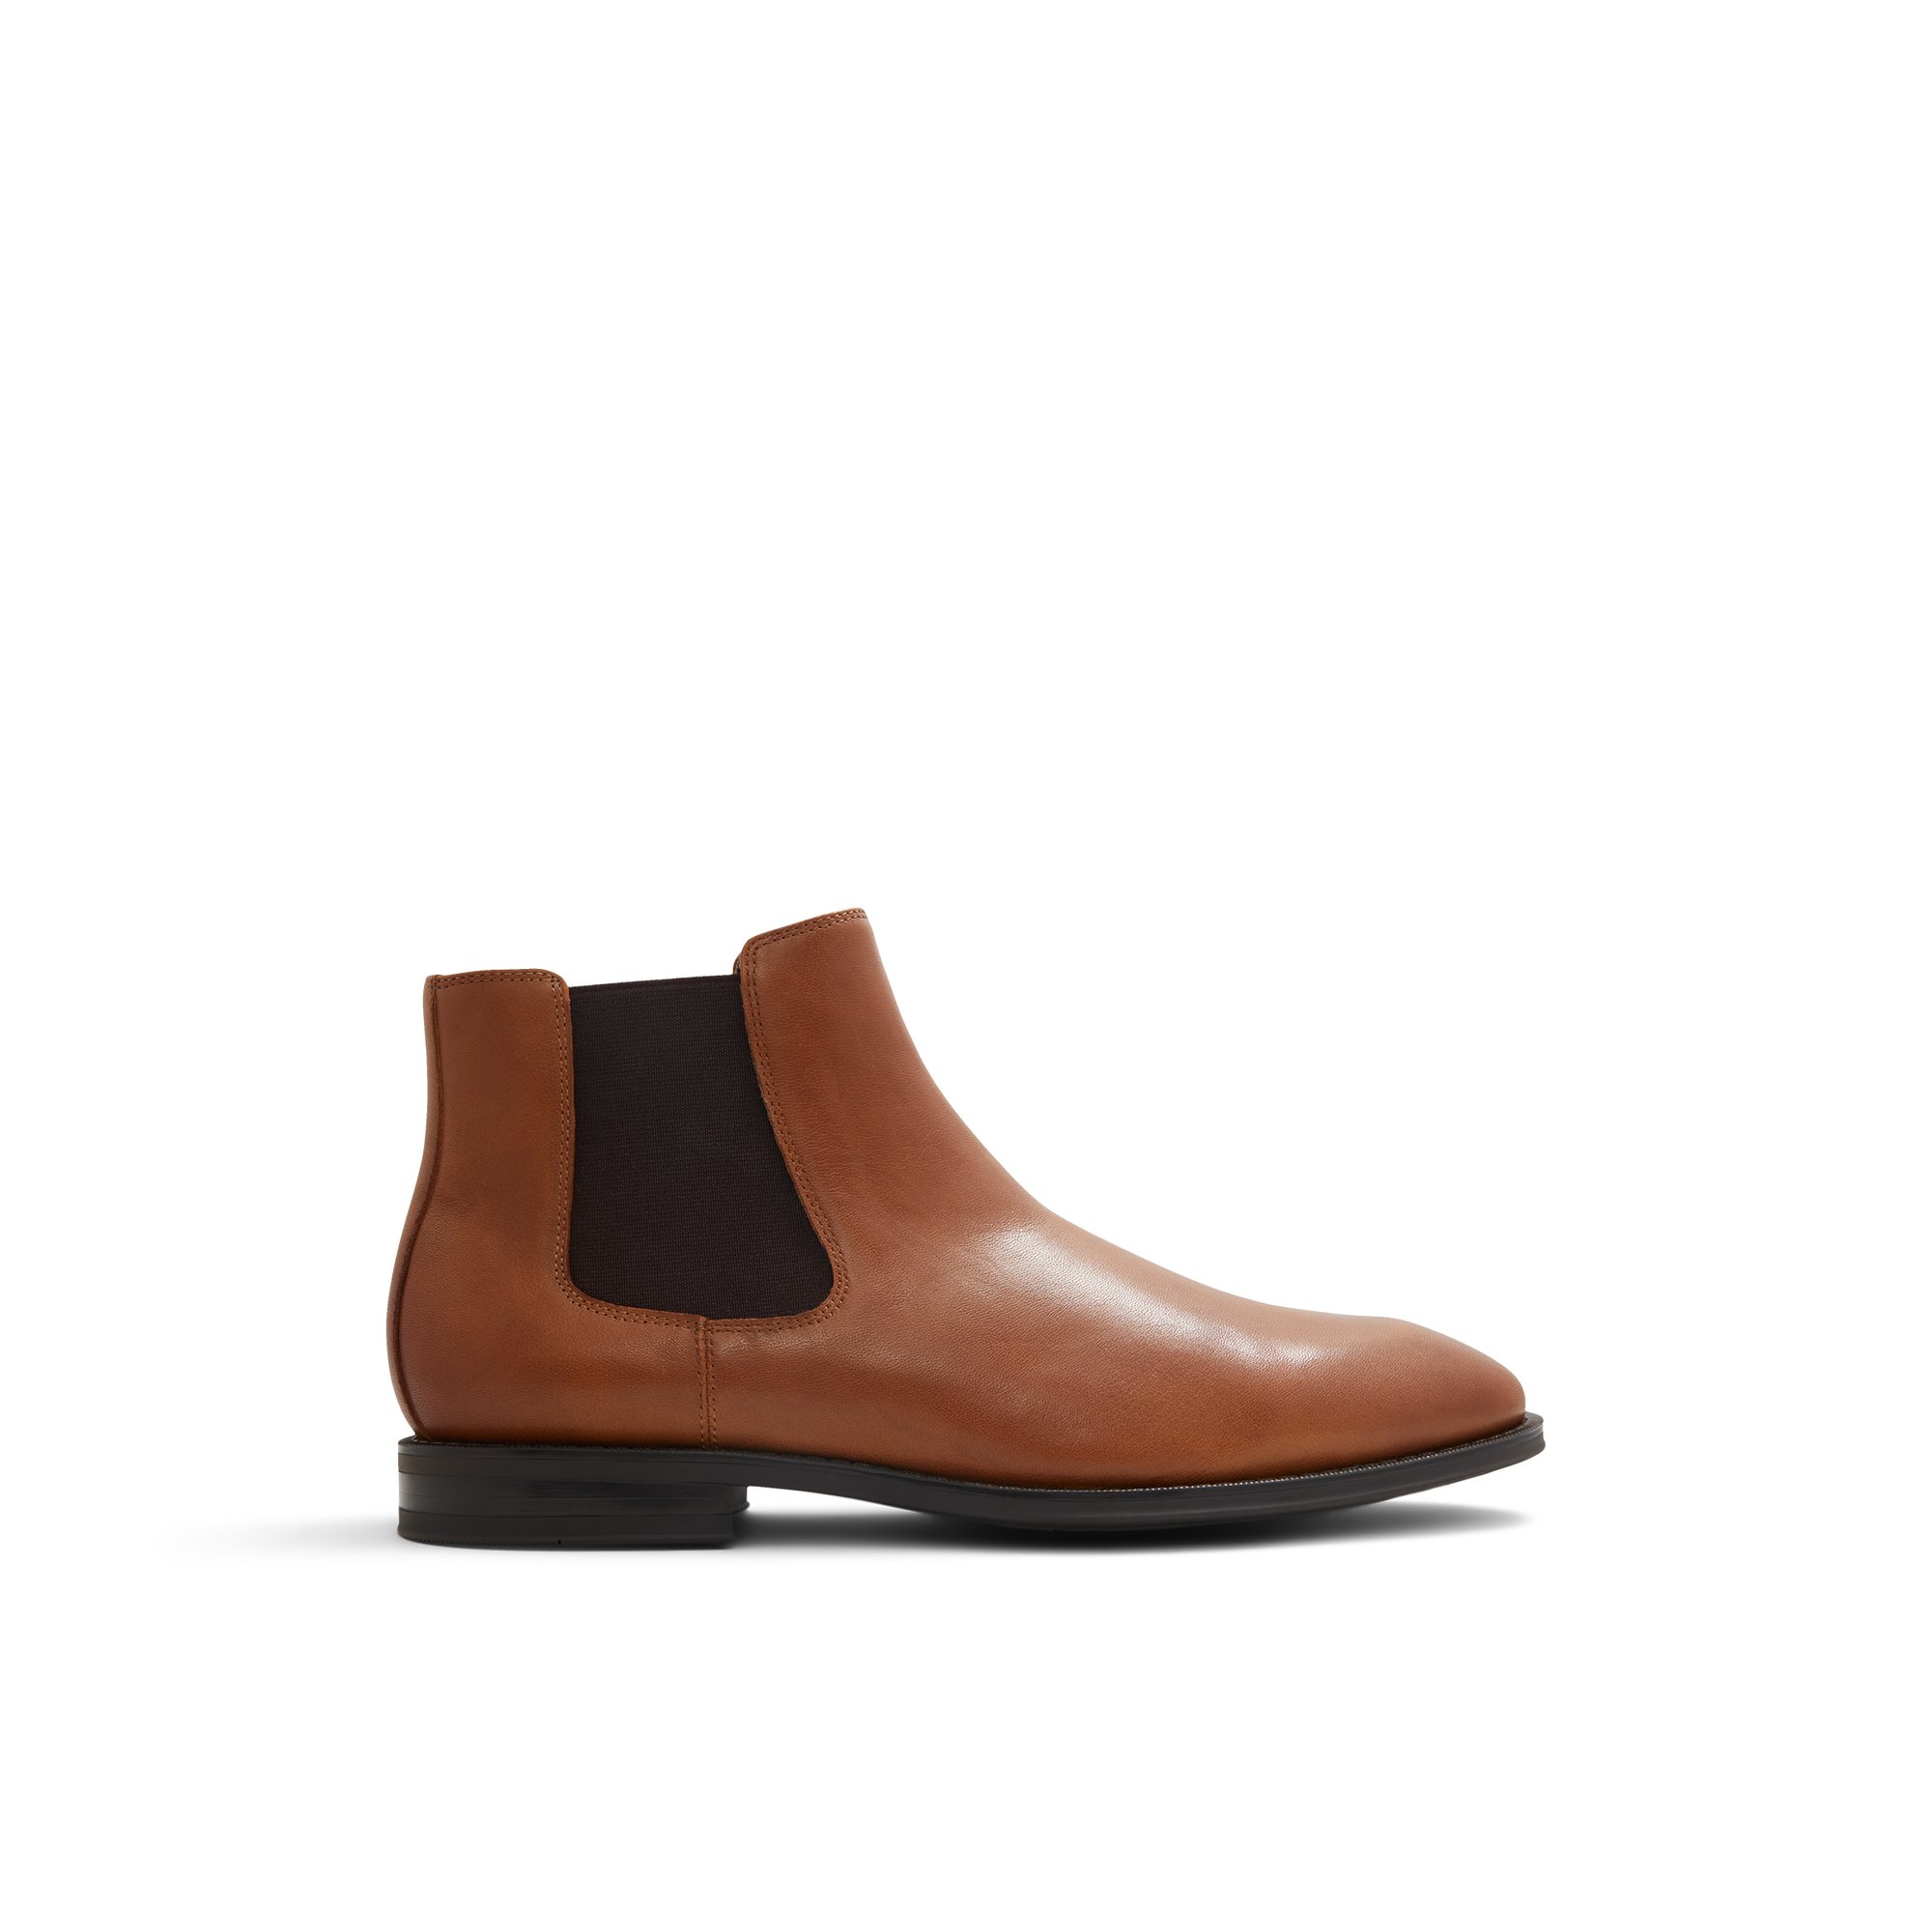 ALDO Collier - Men's Dress Boot - Brown